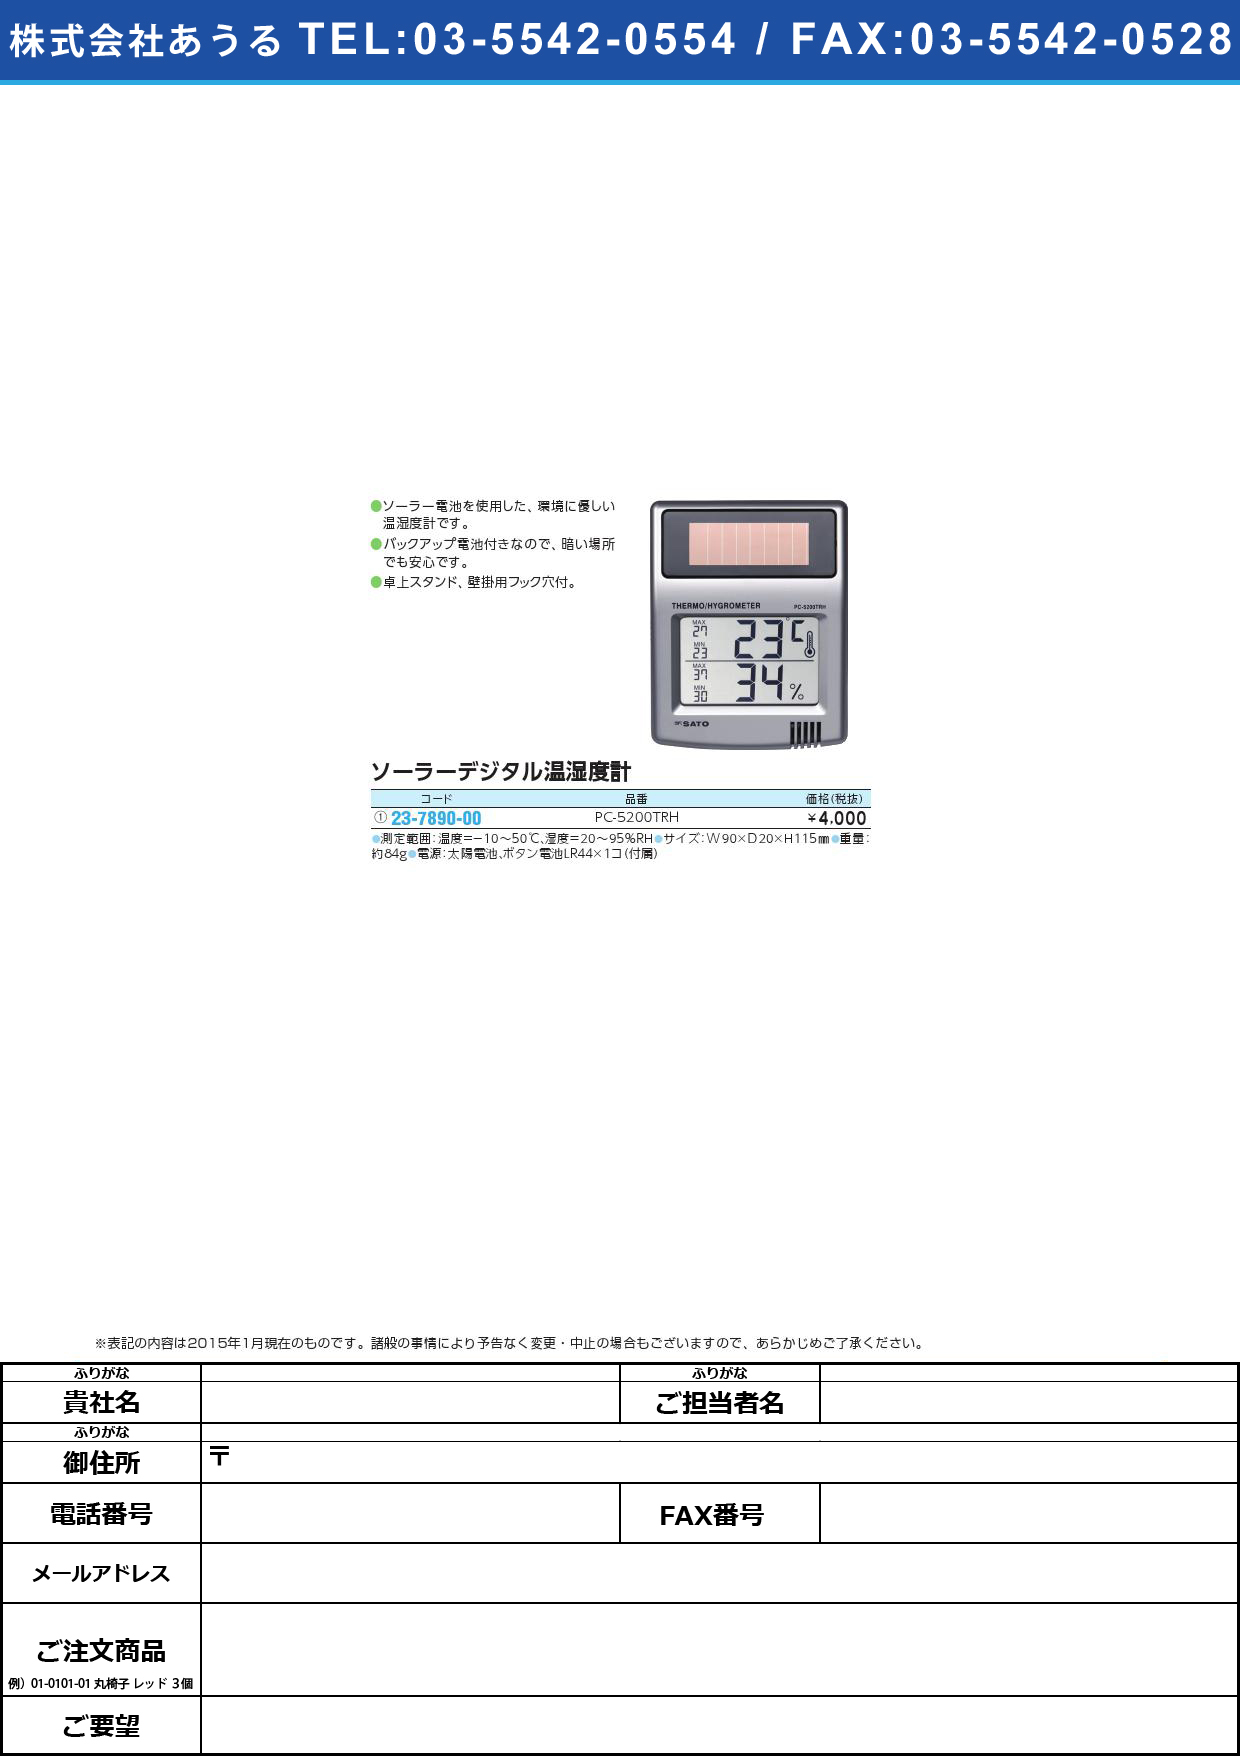 (23-7890-00)ソーラーデジタル温湿度計 ｿｰﾗｰﾃﾞｼﾞﾀﾙｵﾝｼﾂﾄﾞｹｲ(23-7890-00)PC-5200TRH【1台単位】【2015年カタログ商品】